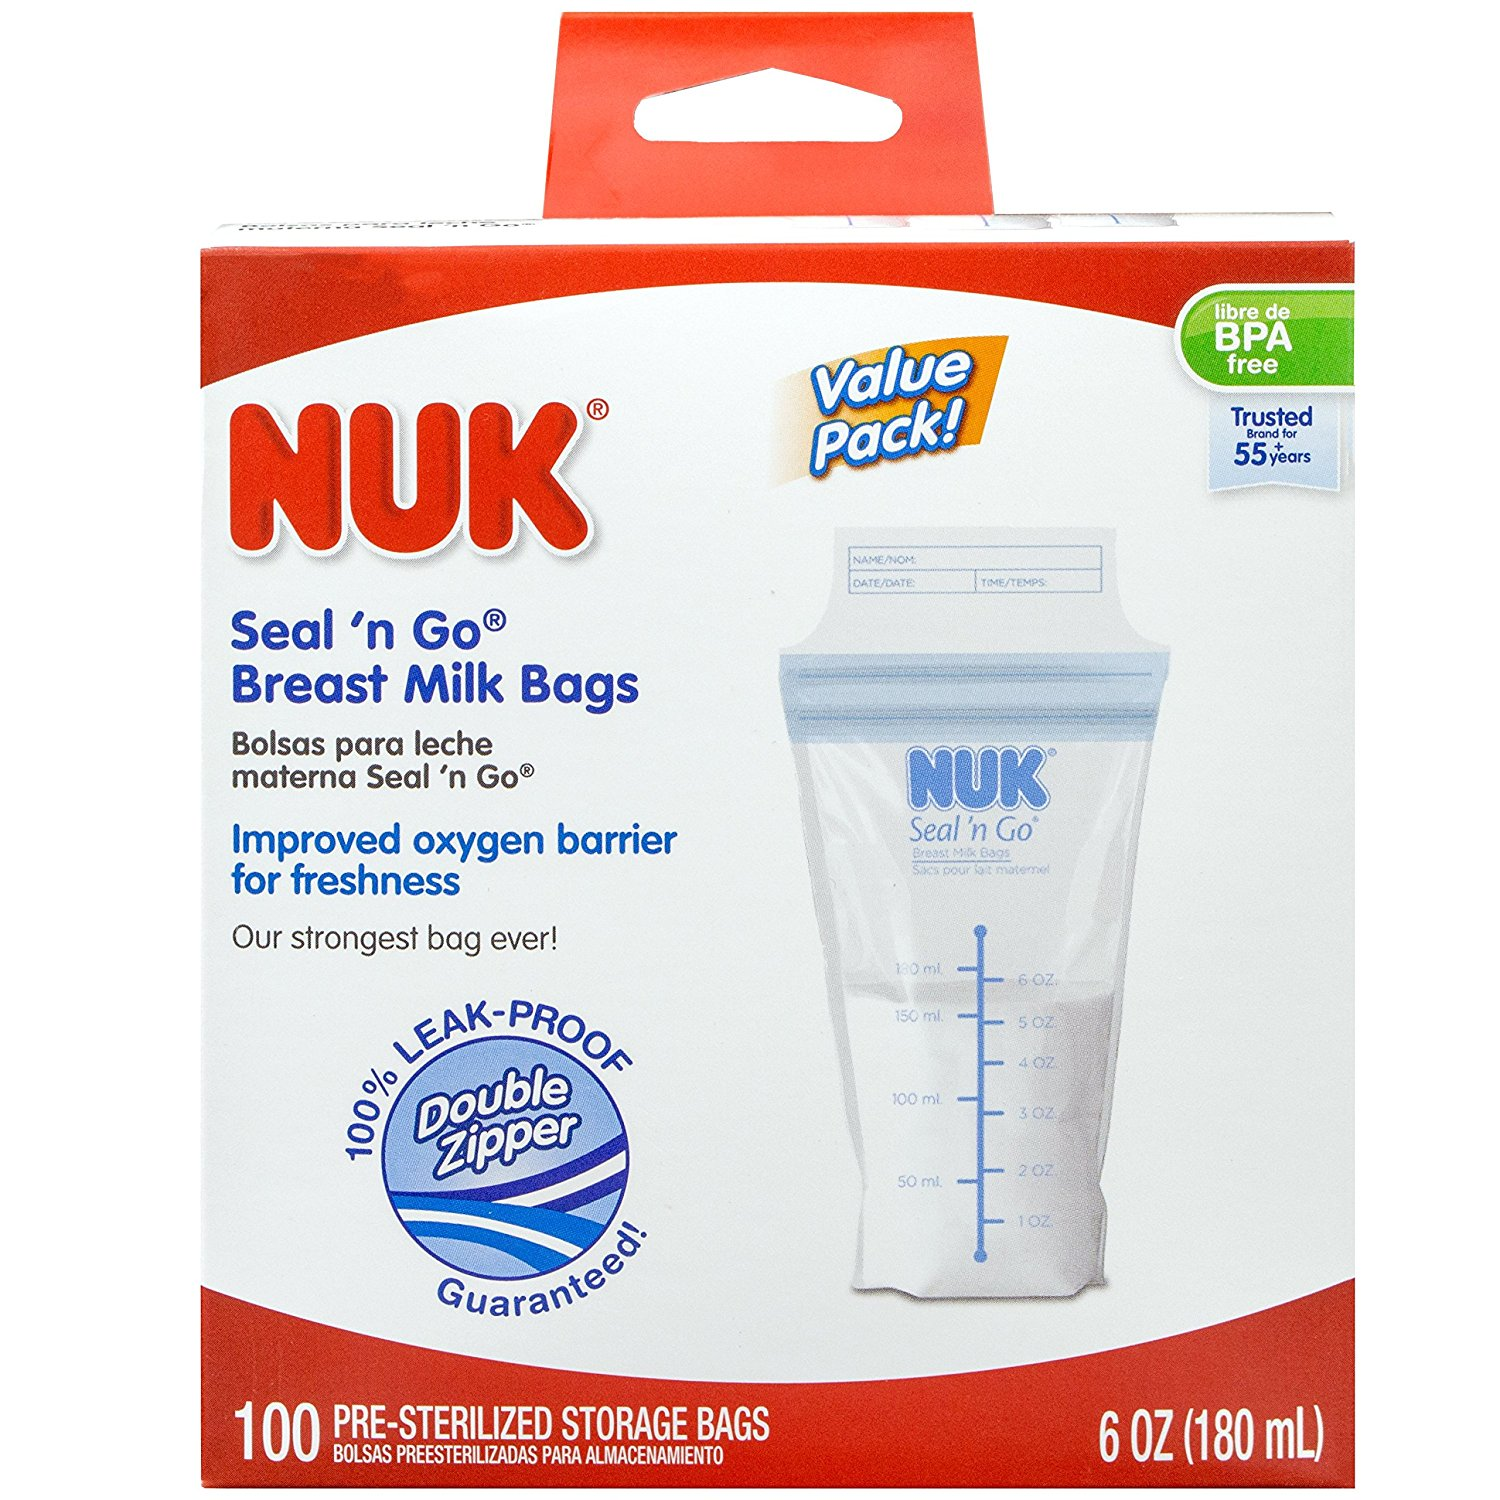 NUK Seal ‘n Go Breast Milk Bags 100 Count Only $9.98! (Reg. $17.98)